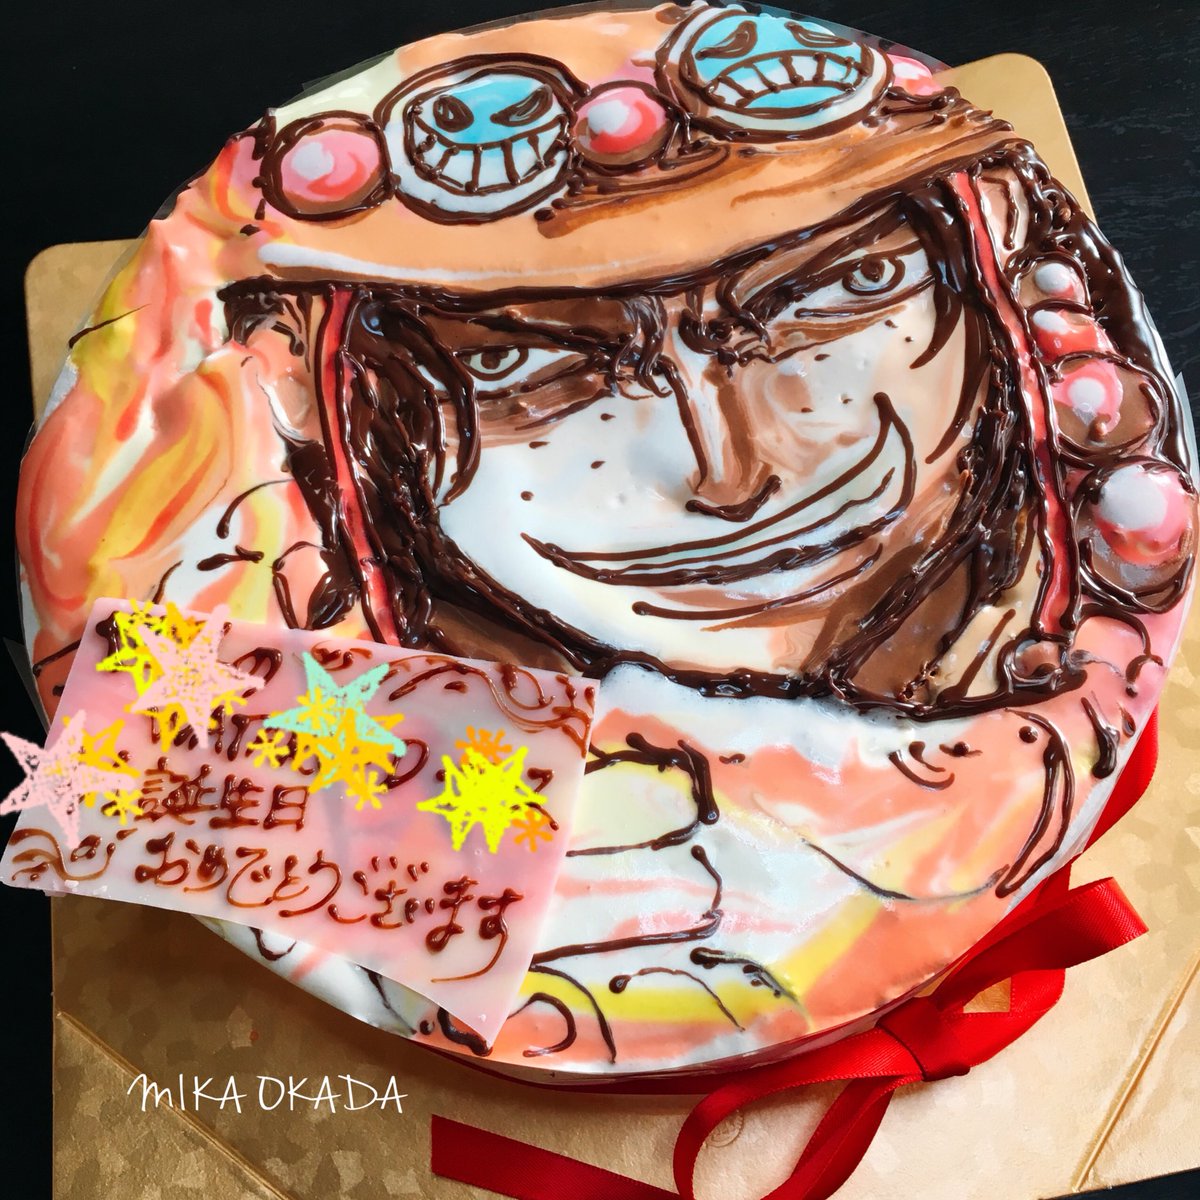 オカダ ミカ 手描きイラストケーキ Pa Twitter エースのイラストケーキ 専門学生の頃の友達から頼まれて作りました 7号サイズの生クリームのイラストケーキ エースは難しい 結構描くのドキドキするキャラだったり 笑 イラストケーキ ケーキ